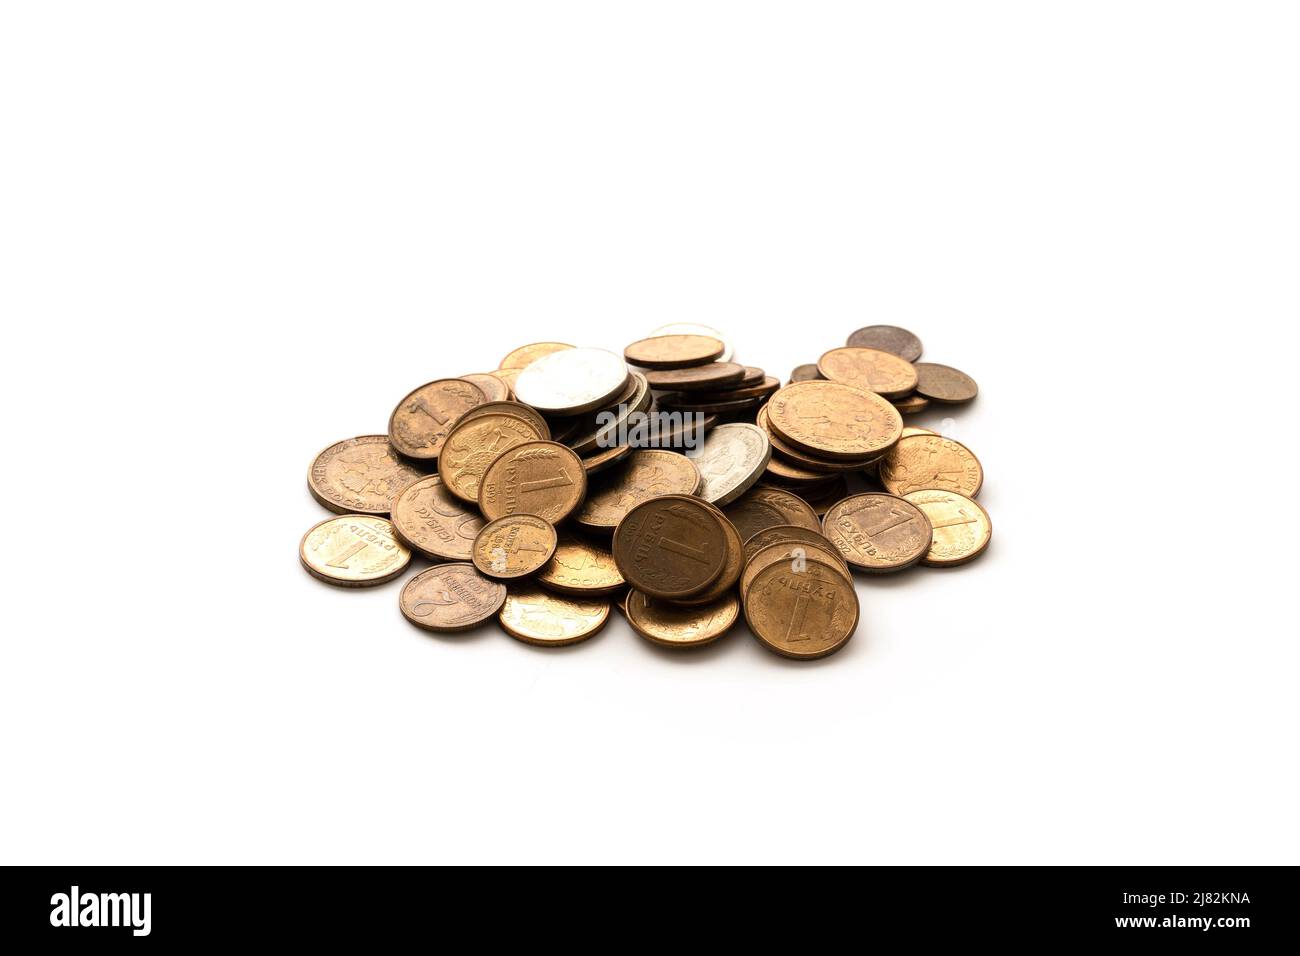 Ein kleiner Haufen russischer Rubel-Münzen, isoliert auf weißem Hintergrund. Das Konzept des Fallens, der Schulden, der Armut. Stockfoto